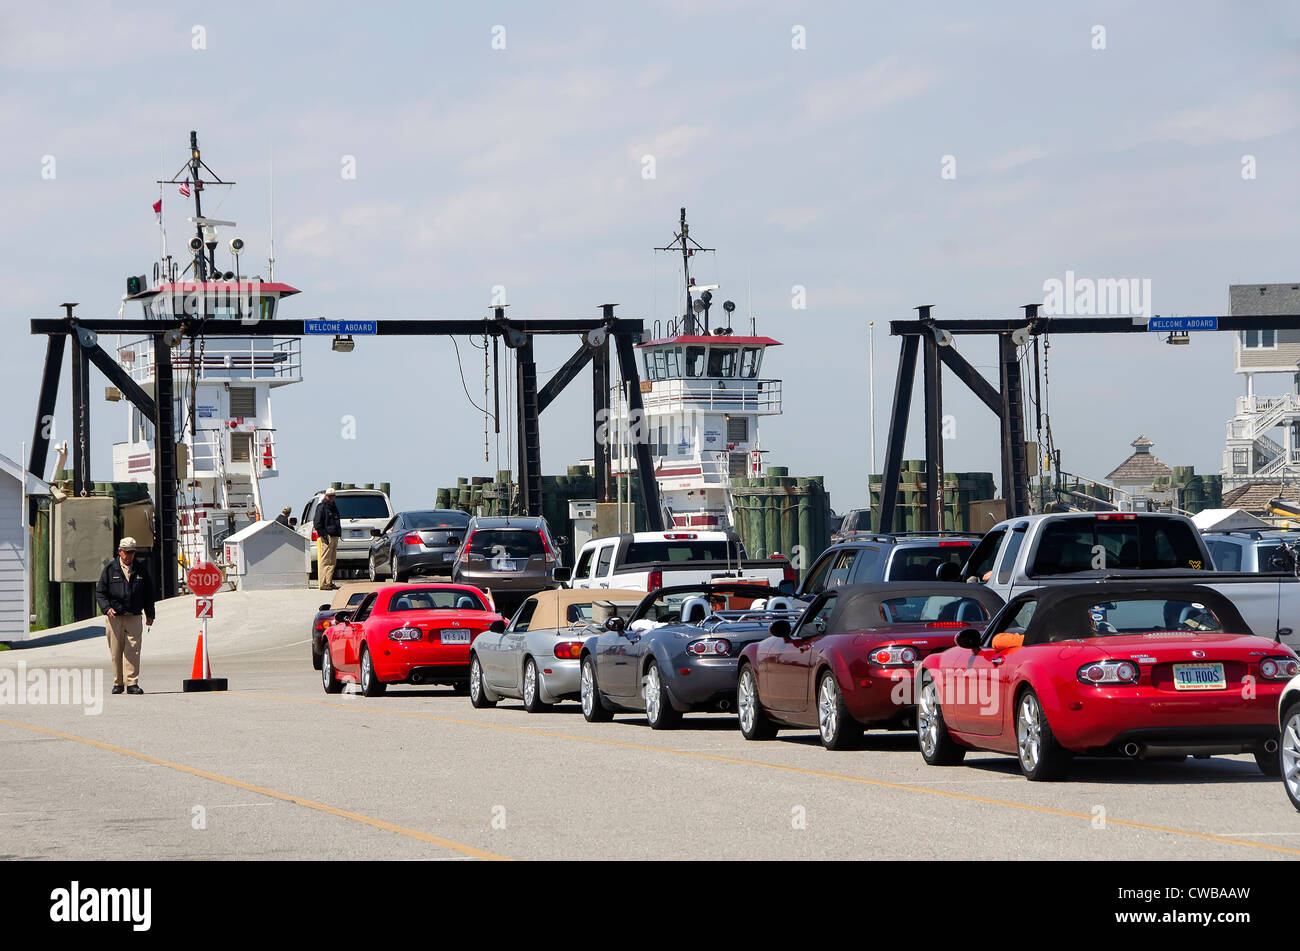 La linea di automobili in attesa di Hatteras traghetto per Ocracoke Island sulla North Carolina Outer Banks Foto Stock